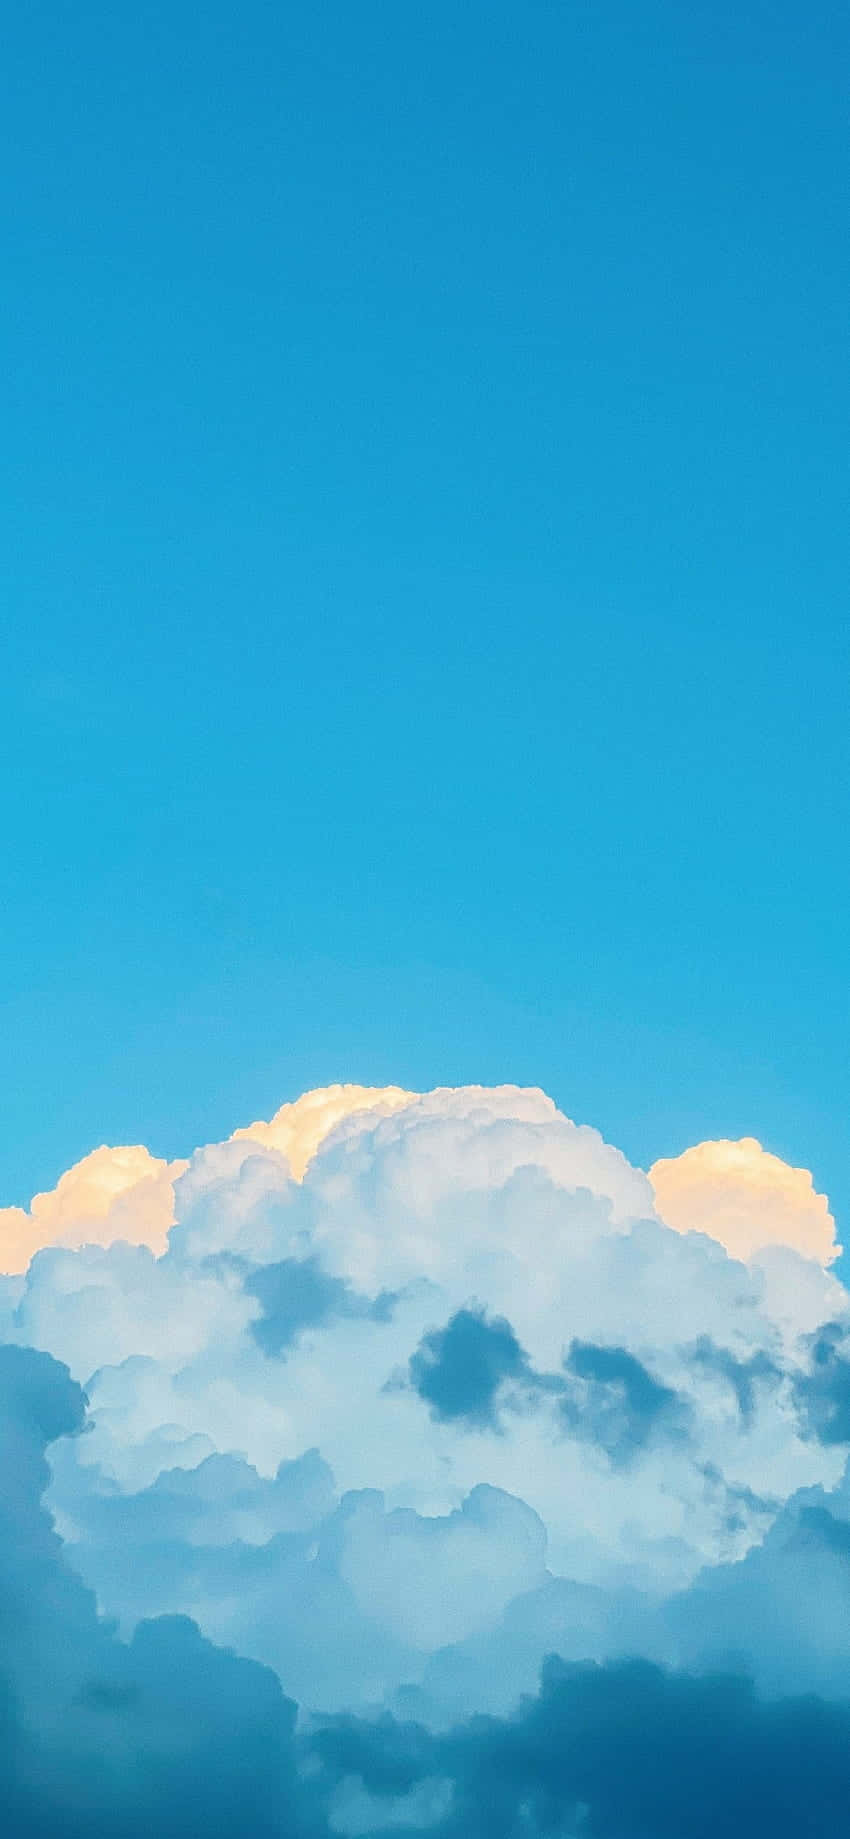 Unaestética Soñadora De Suaves Nubes Blancas. Fondo de pantalla